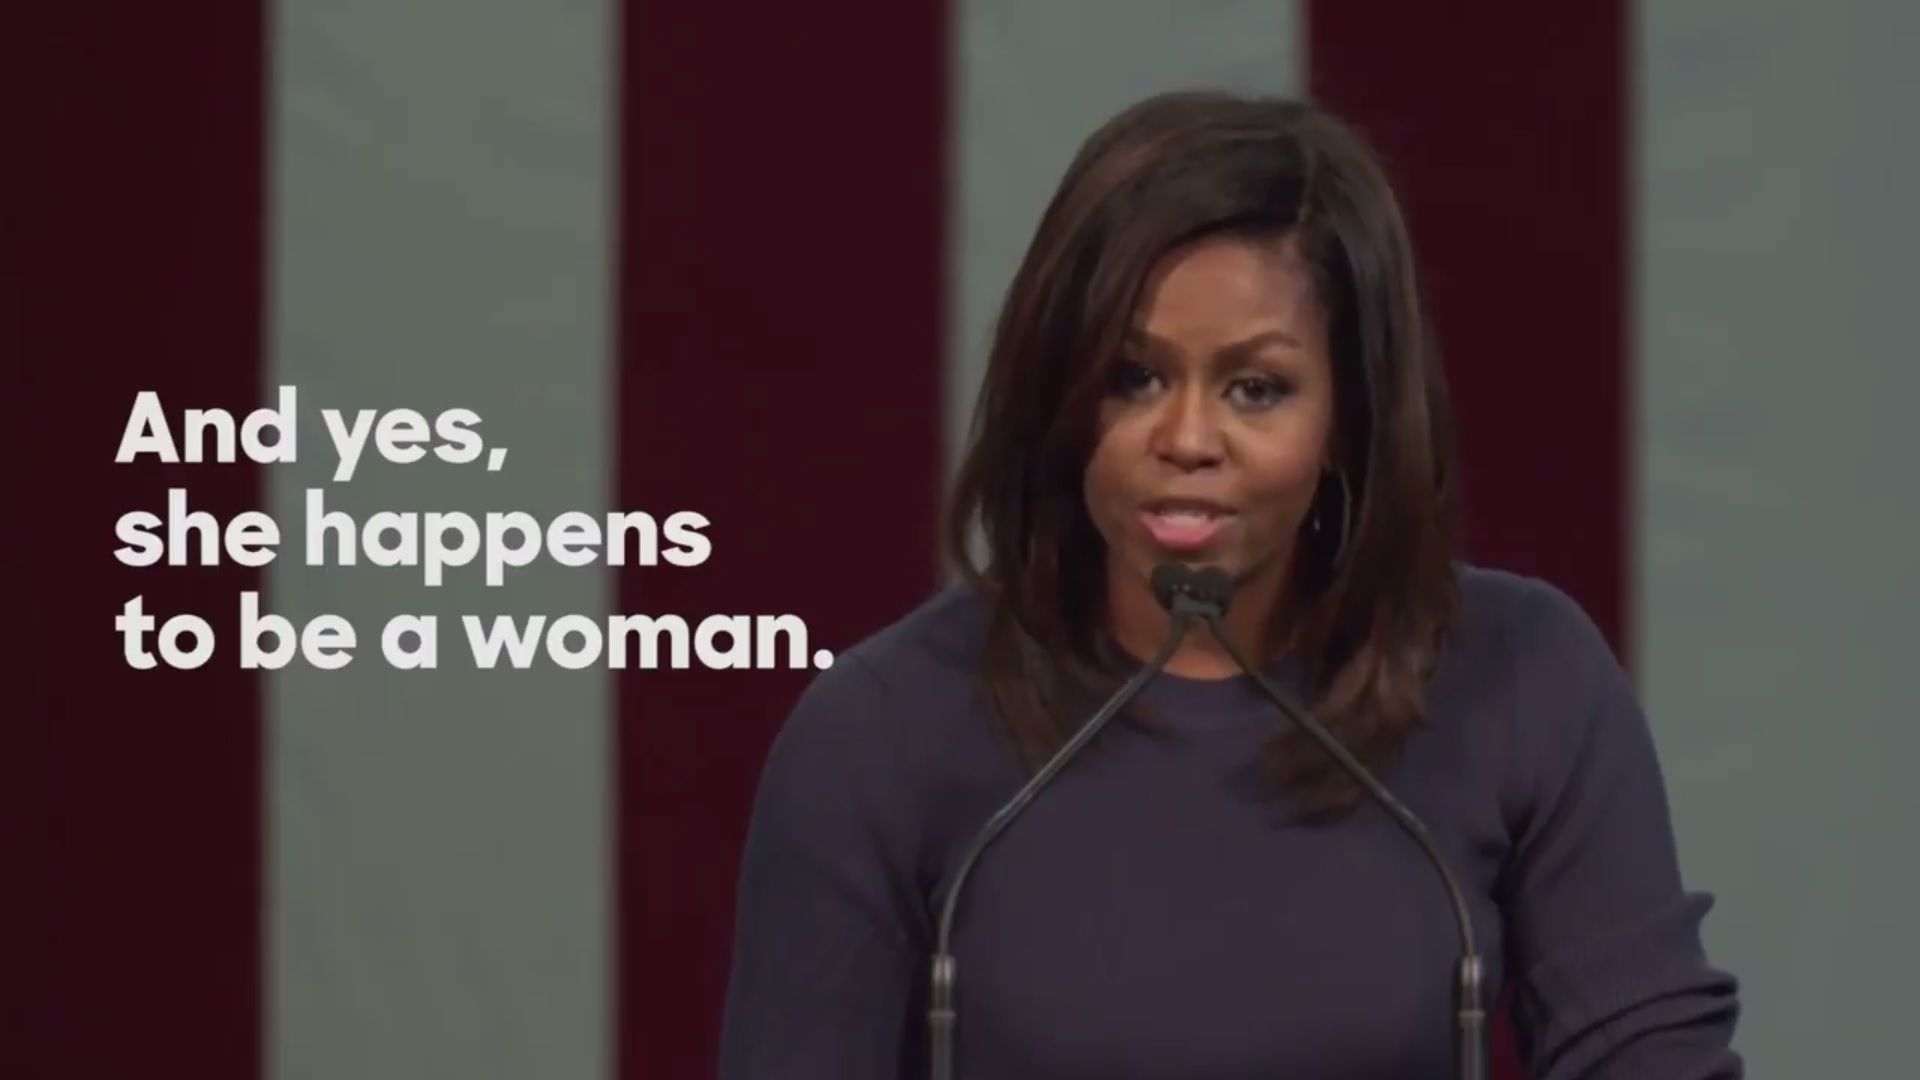 Vídeo: El sorprendente discurso de Michelle Obama contra Donald Trump